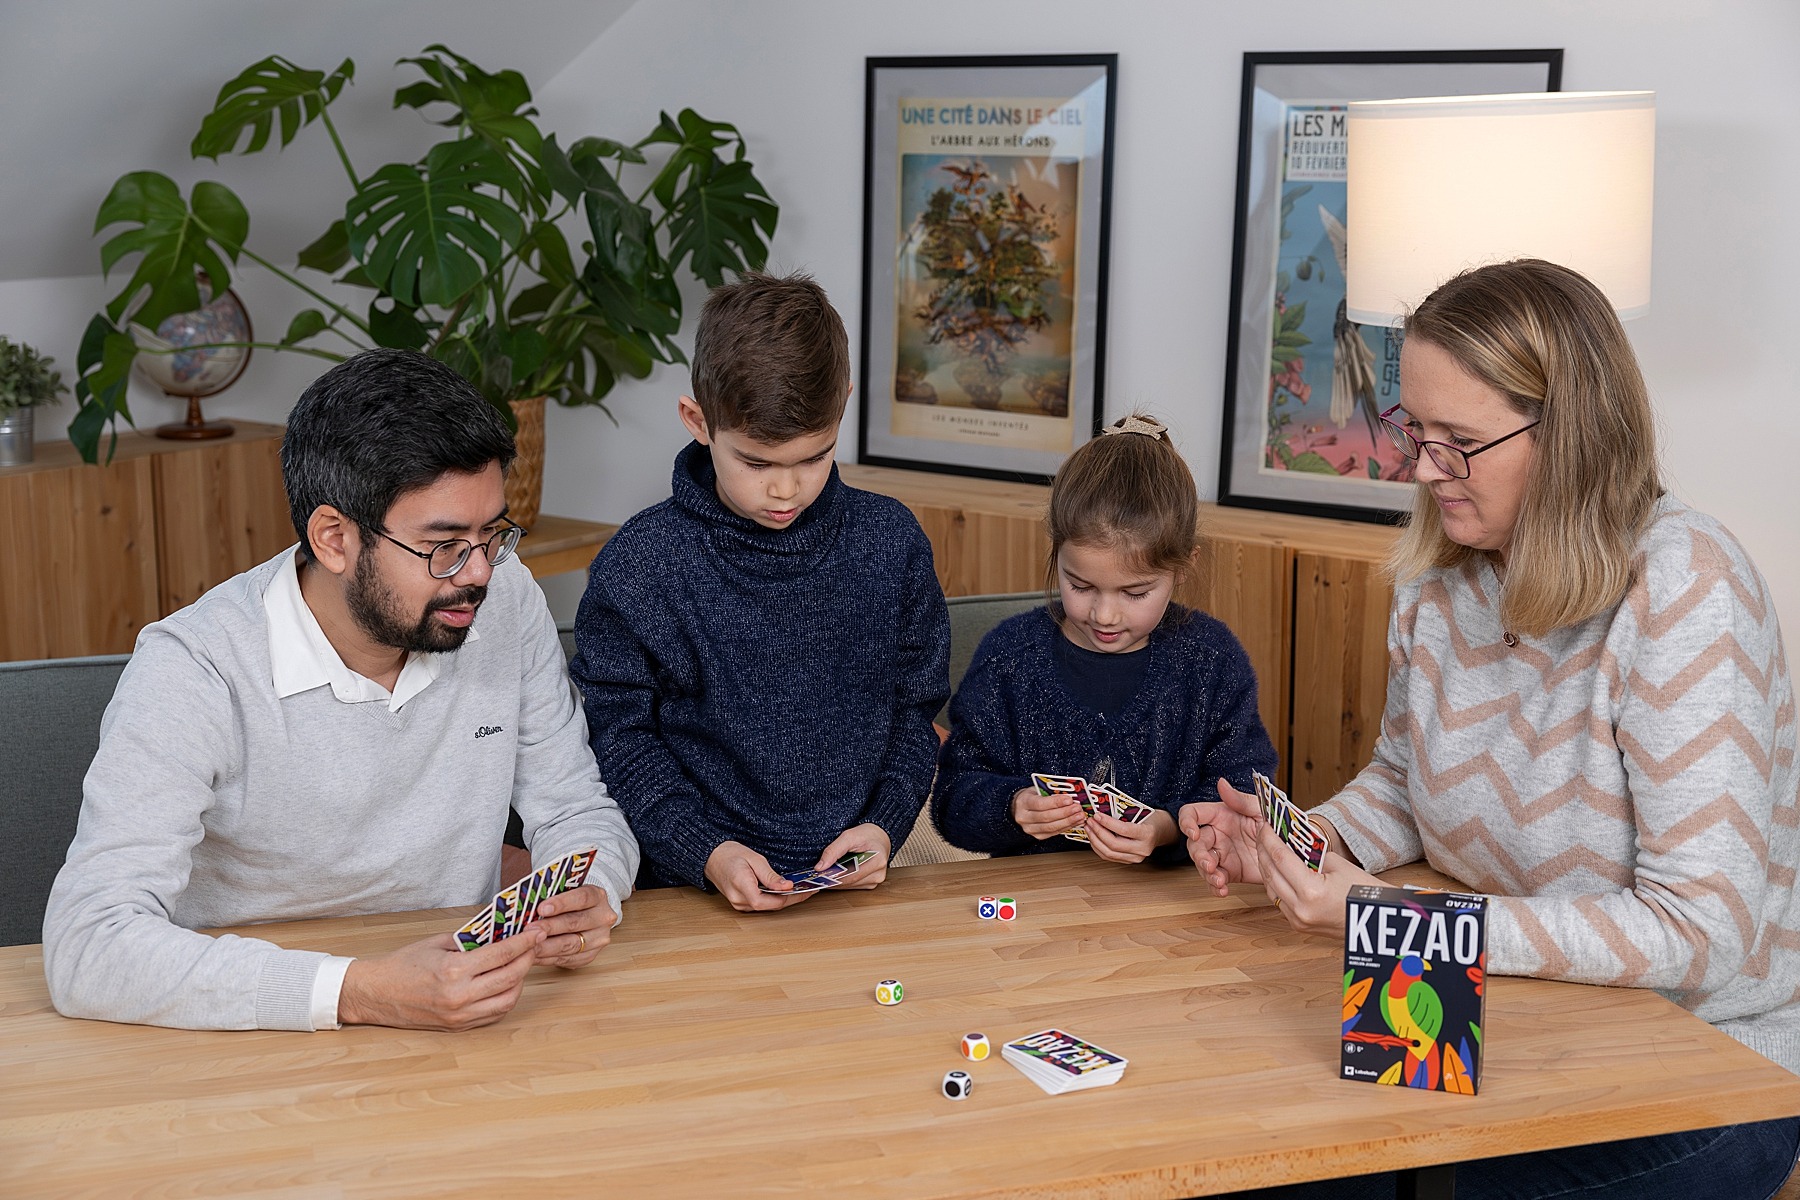 Kezao laboludic jeu de société boardgame 